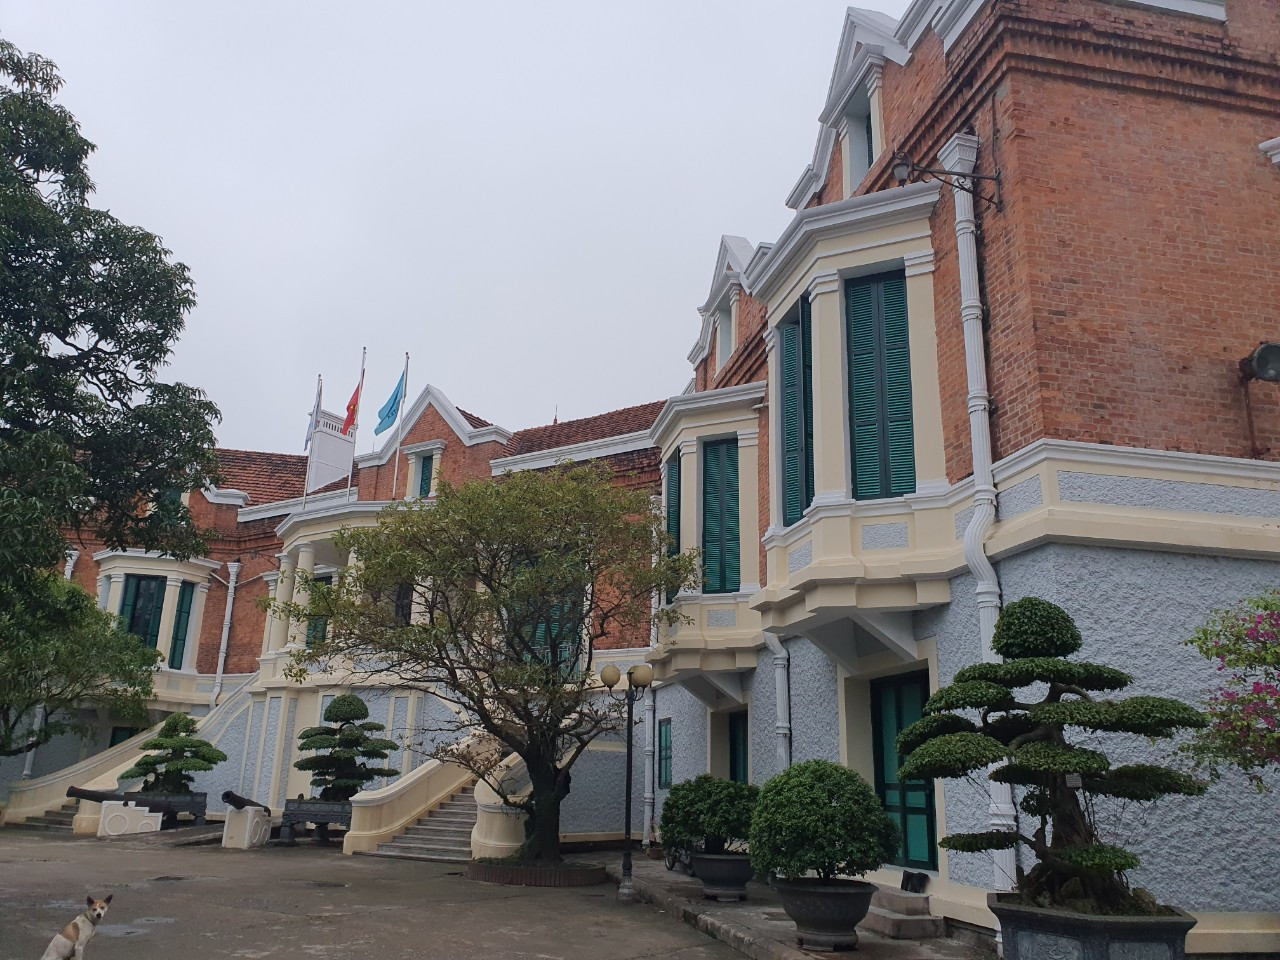 Nam Định cũng được biết đến với là cái nôi của ngành công nghiệp dệt Việt Nam, nơi có Nhà máy Dệt Nam Định nổi tiếng. Trong ảnh: Bảo tàng ngành Dệt may Việt Nam, thiết kế theo kiến trúc đặc trưng của Pháp, nằm trên đường Hoàng Hoa Thám, TP Nam Định.